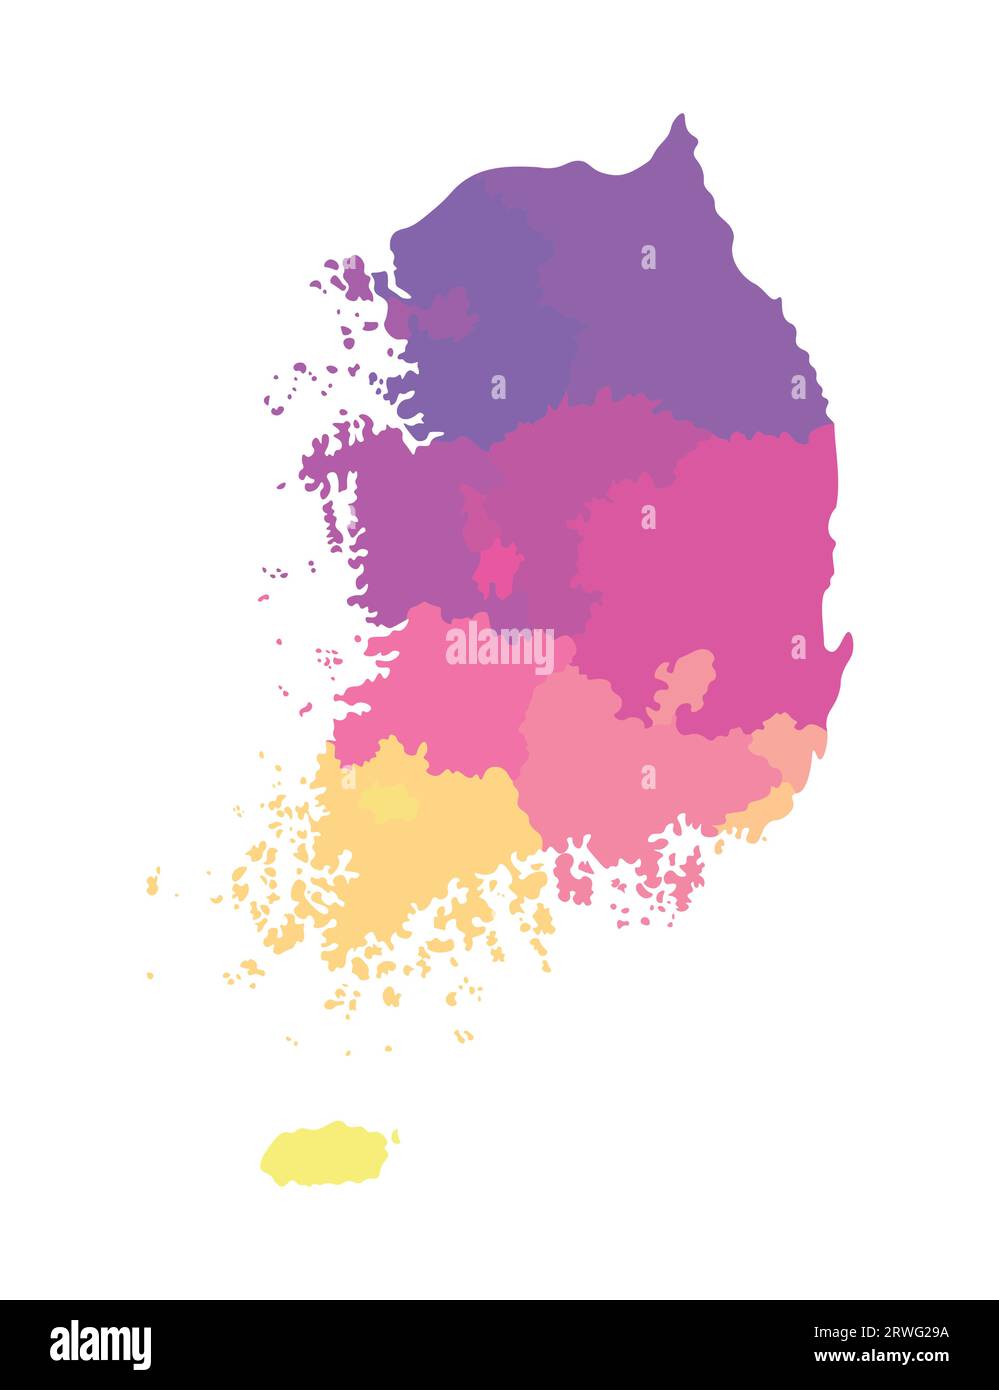 Illustrazione vettoriale isolata della mappa amministrativa semplificata della Corea del Sud (Repubblica di Corea). Confini delle regioni. Silhouette multicolore. Illustrazione Vettoriale